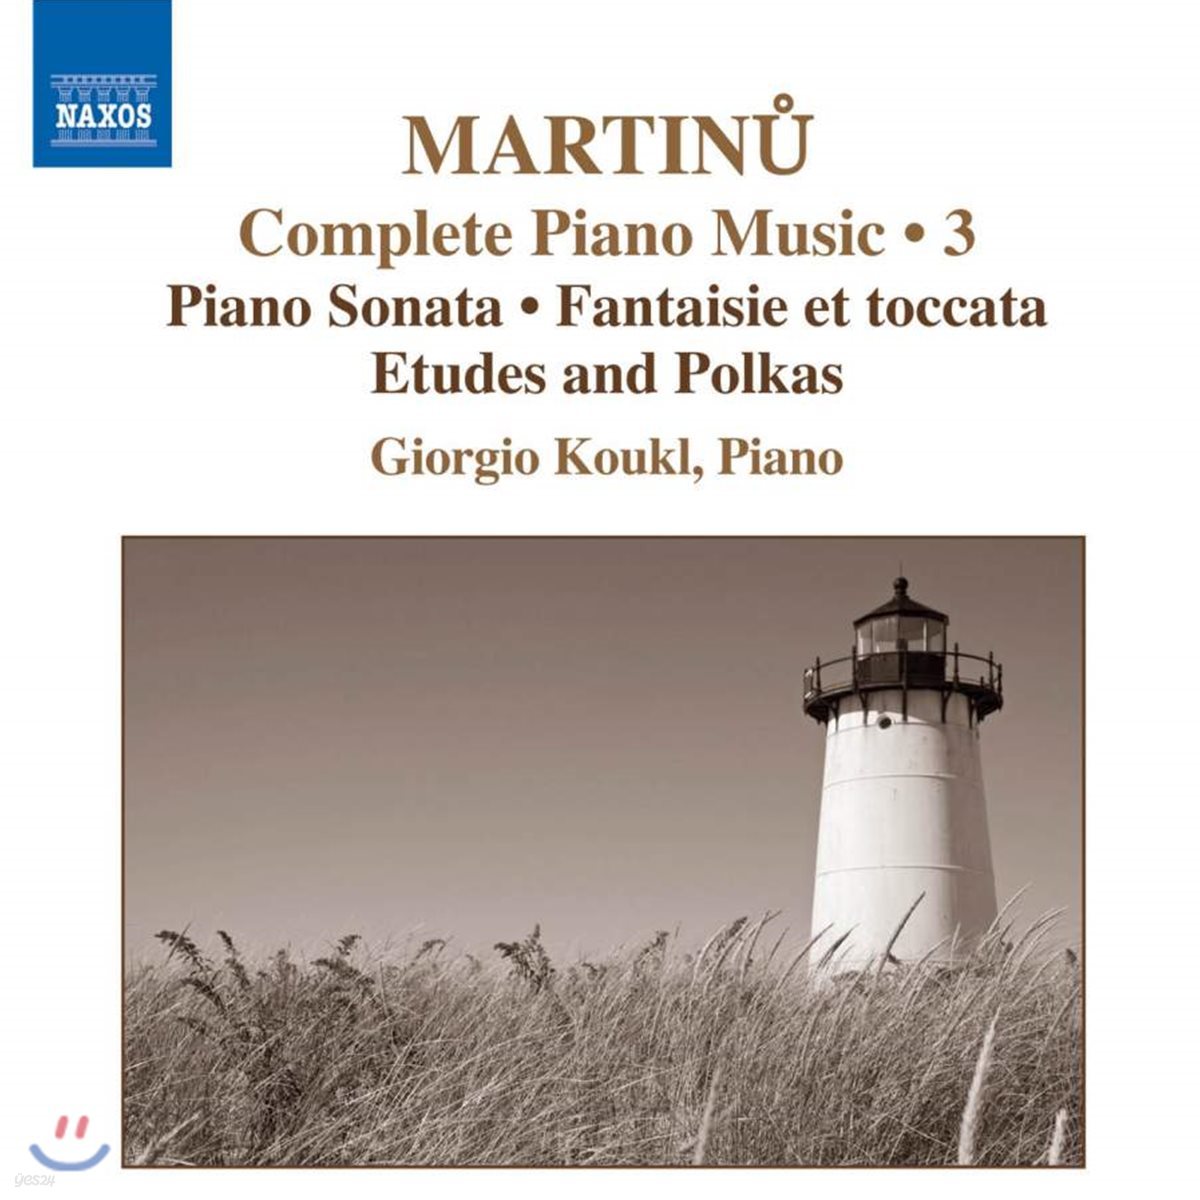 Giorgio Koukl 마르티누 : 피아노 소나타, 에튀드와 폴카 1-3집, 환상곡과 토카타 외 (Martinu: Complete Piano Music Volume 3)